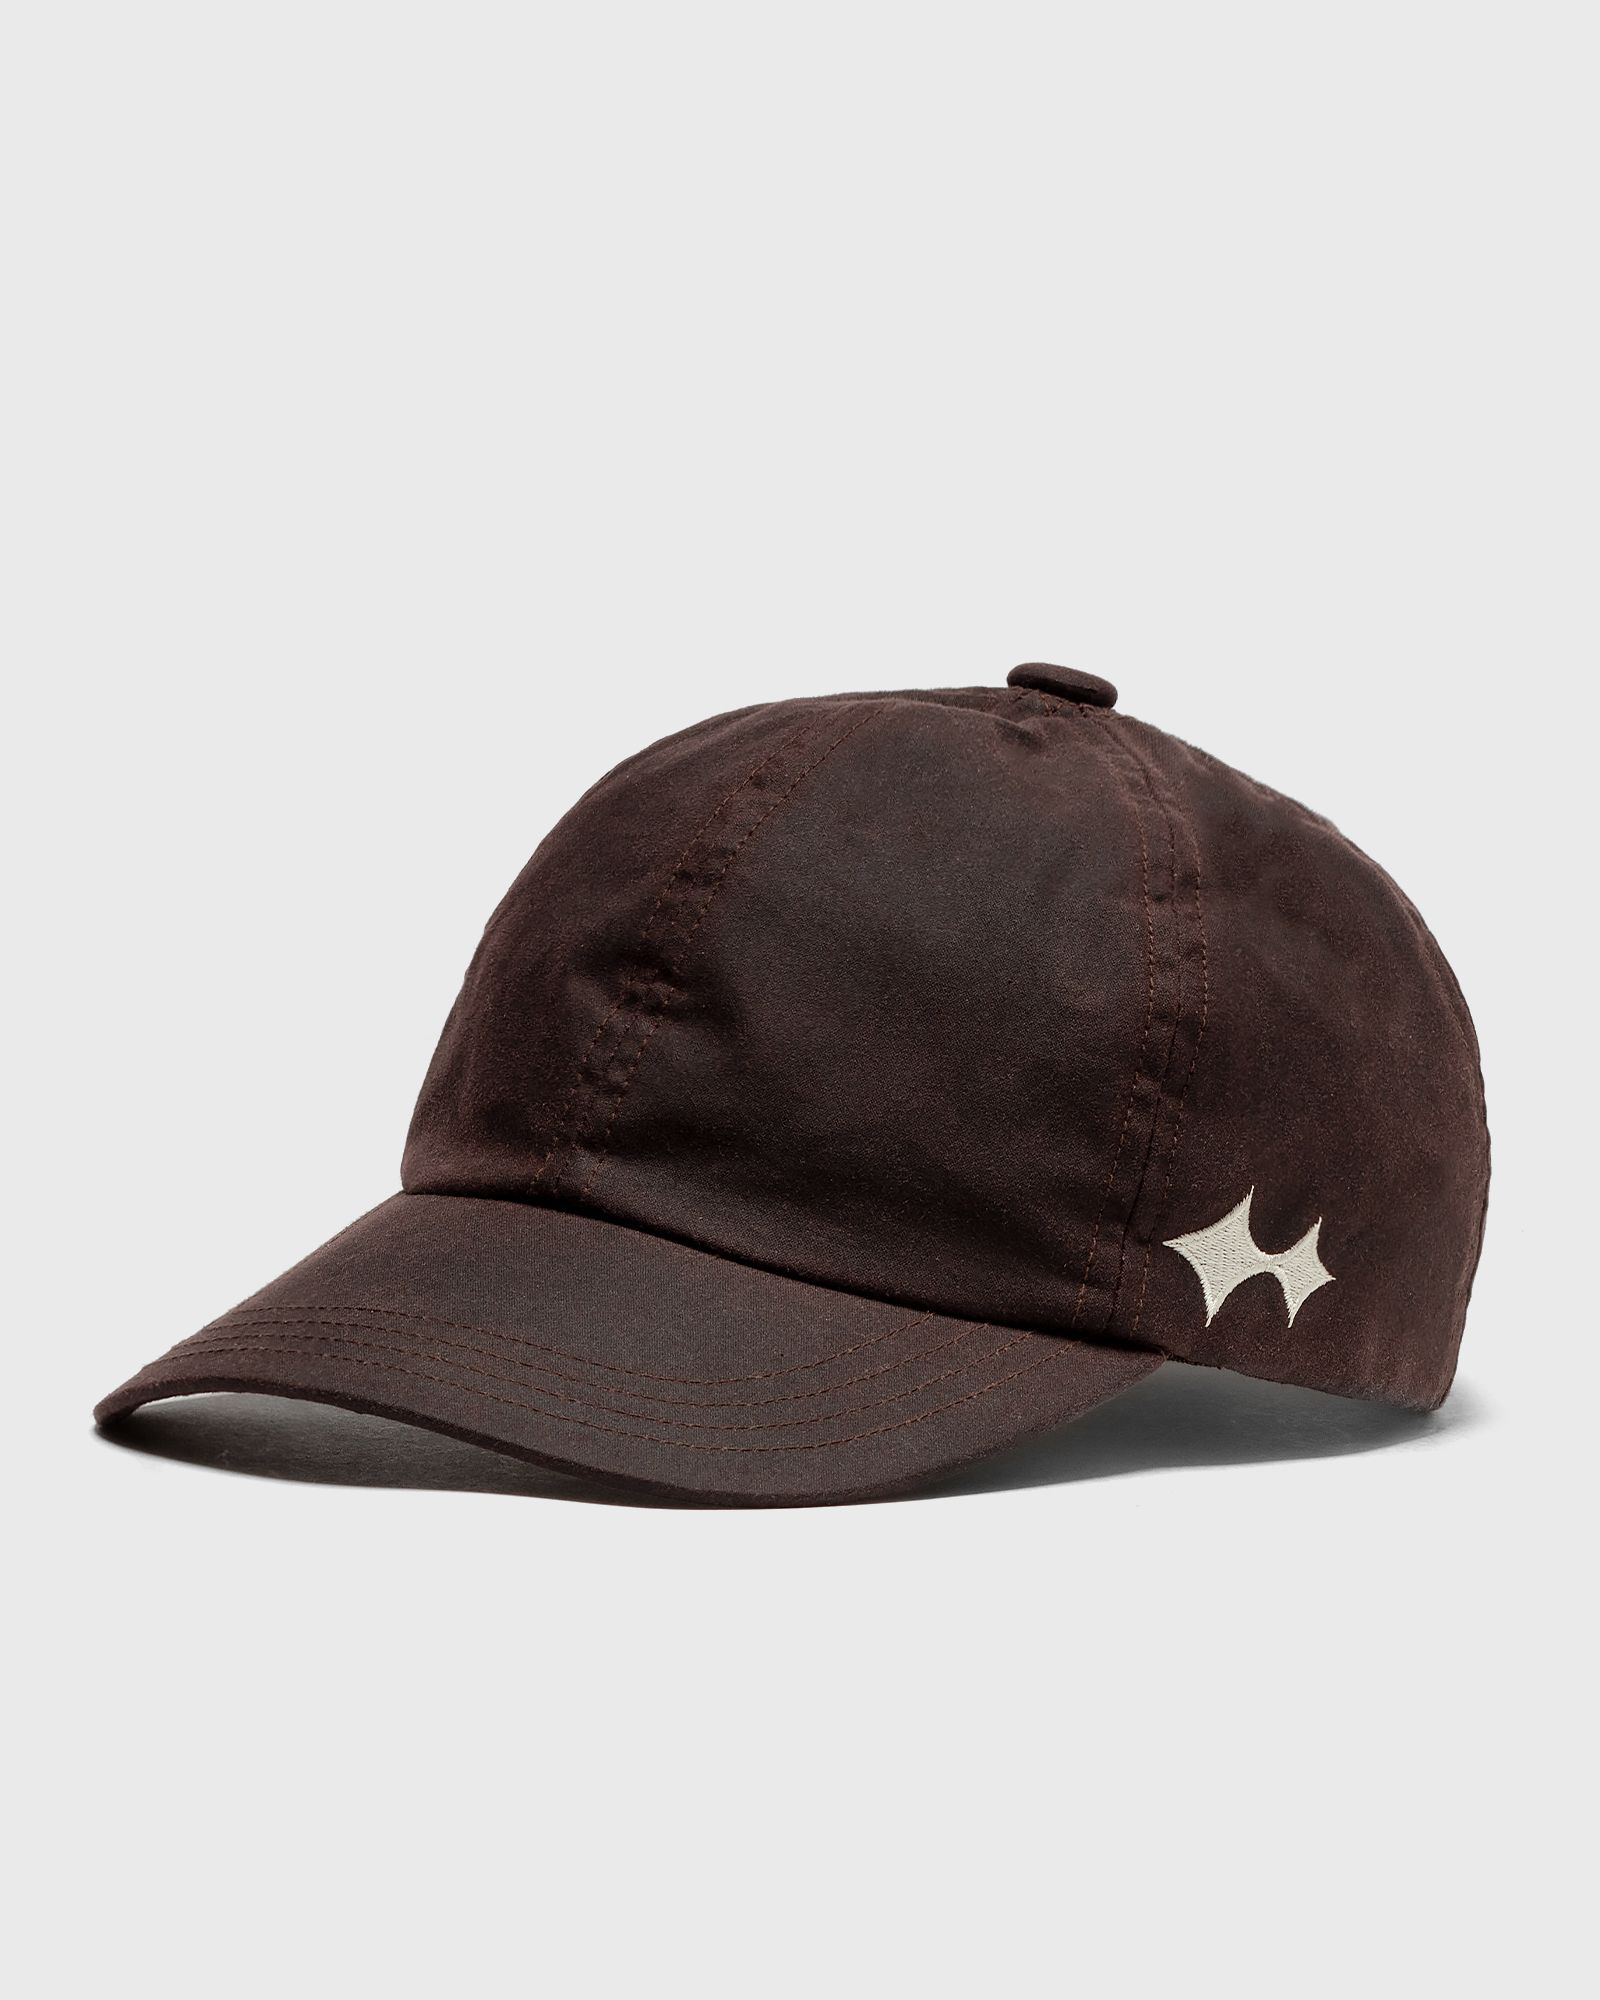 Barbour - x bstn brand sport cap men caps brown in größe:one size